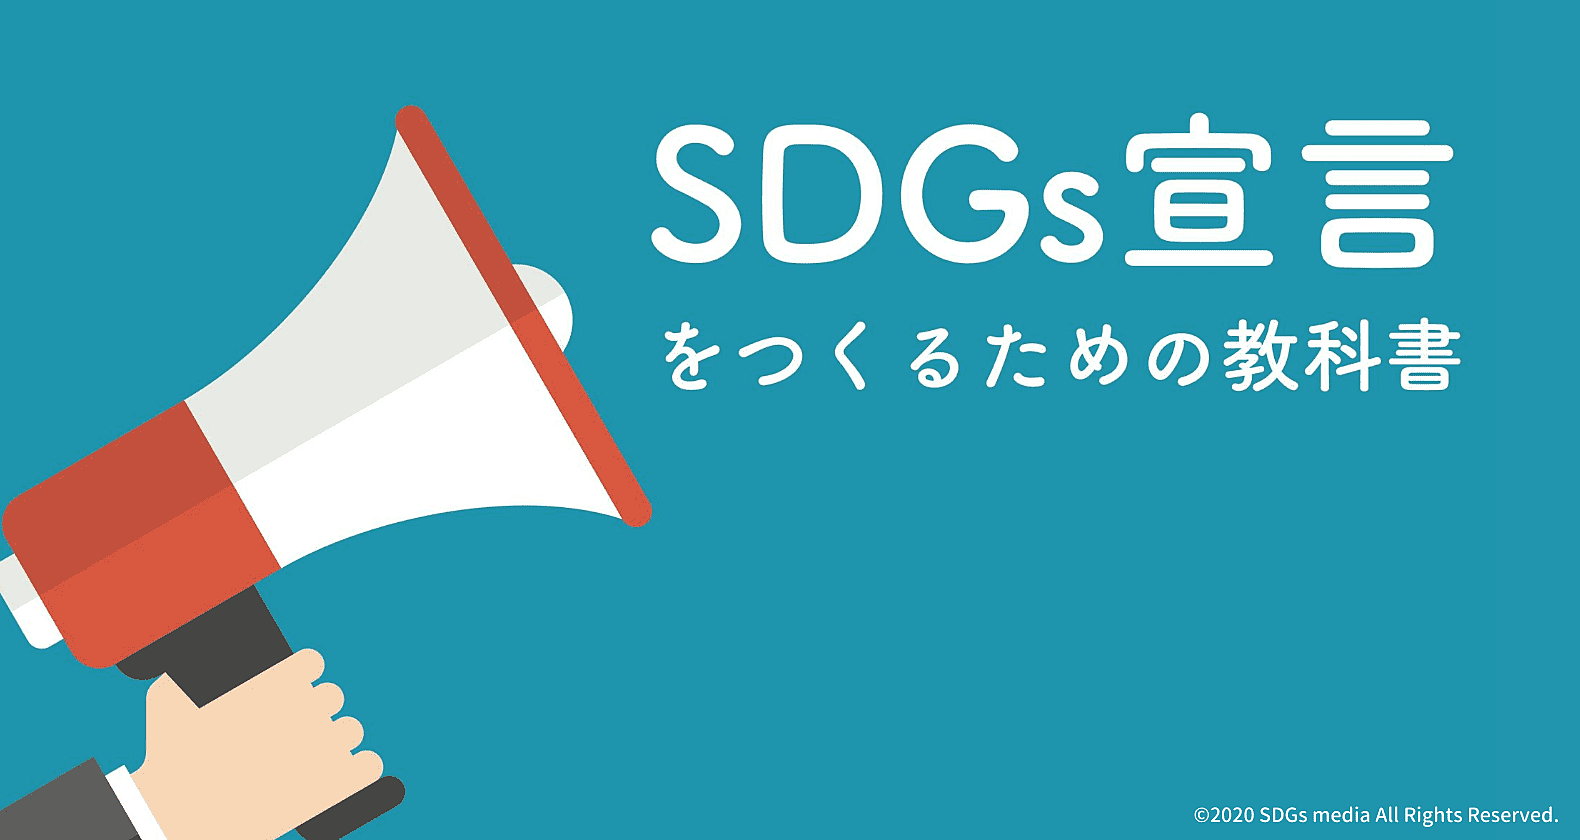 効果的なSDGs宣言の作成方法｜つくるメリットと厳選事例も紹介の画像